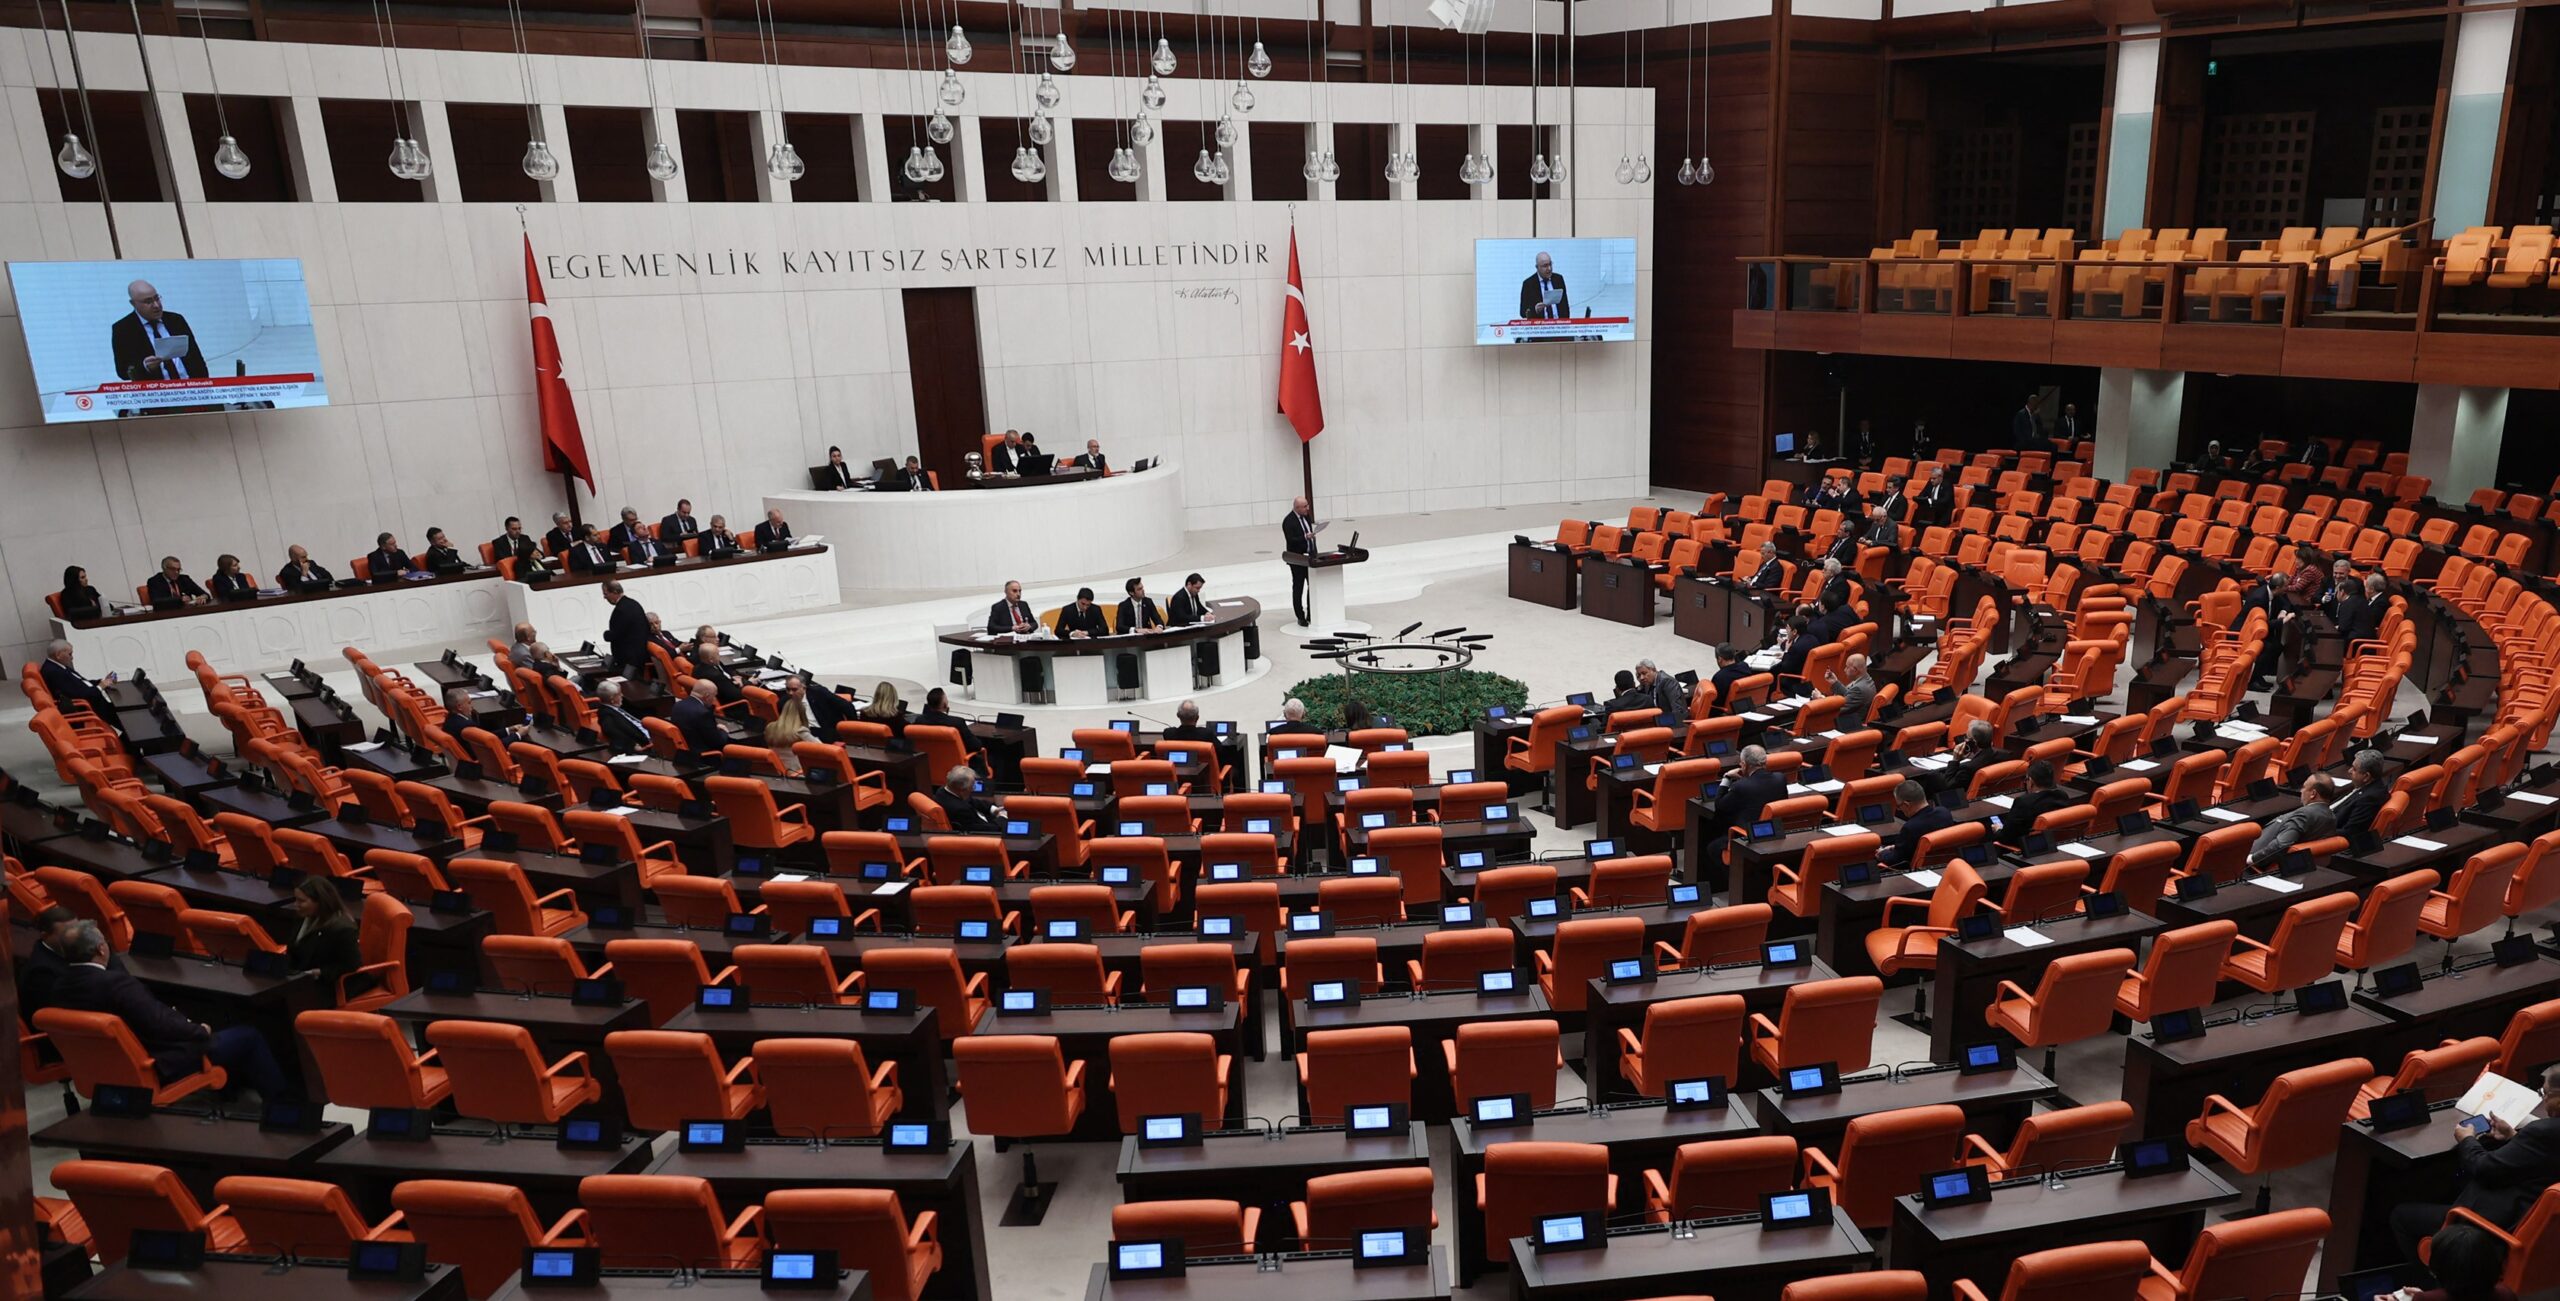 Νέα εξωτερική πολιτική της Τουρκίας ή απλώς προεκλογική;